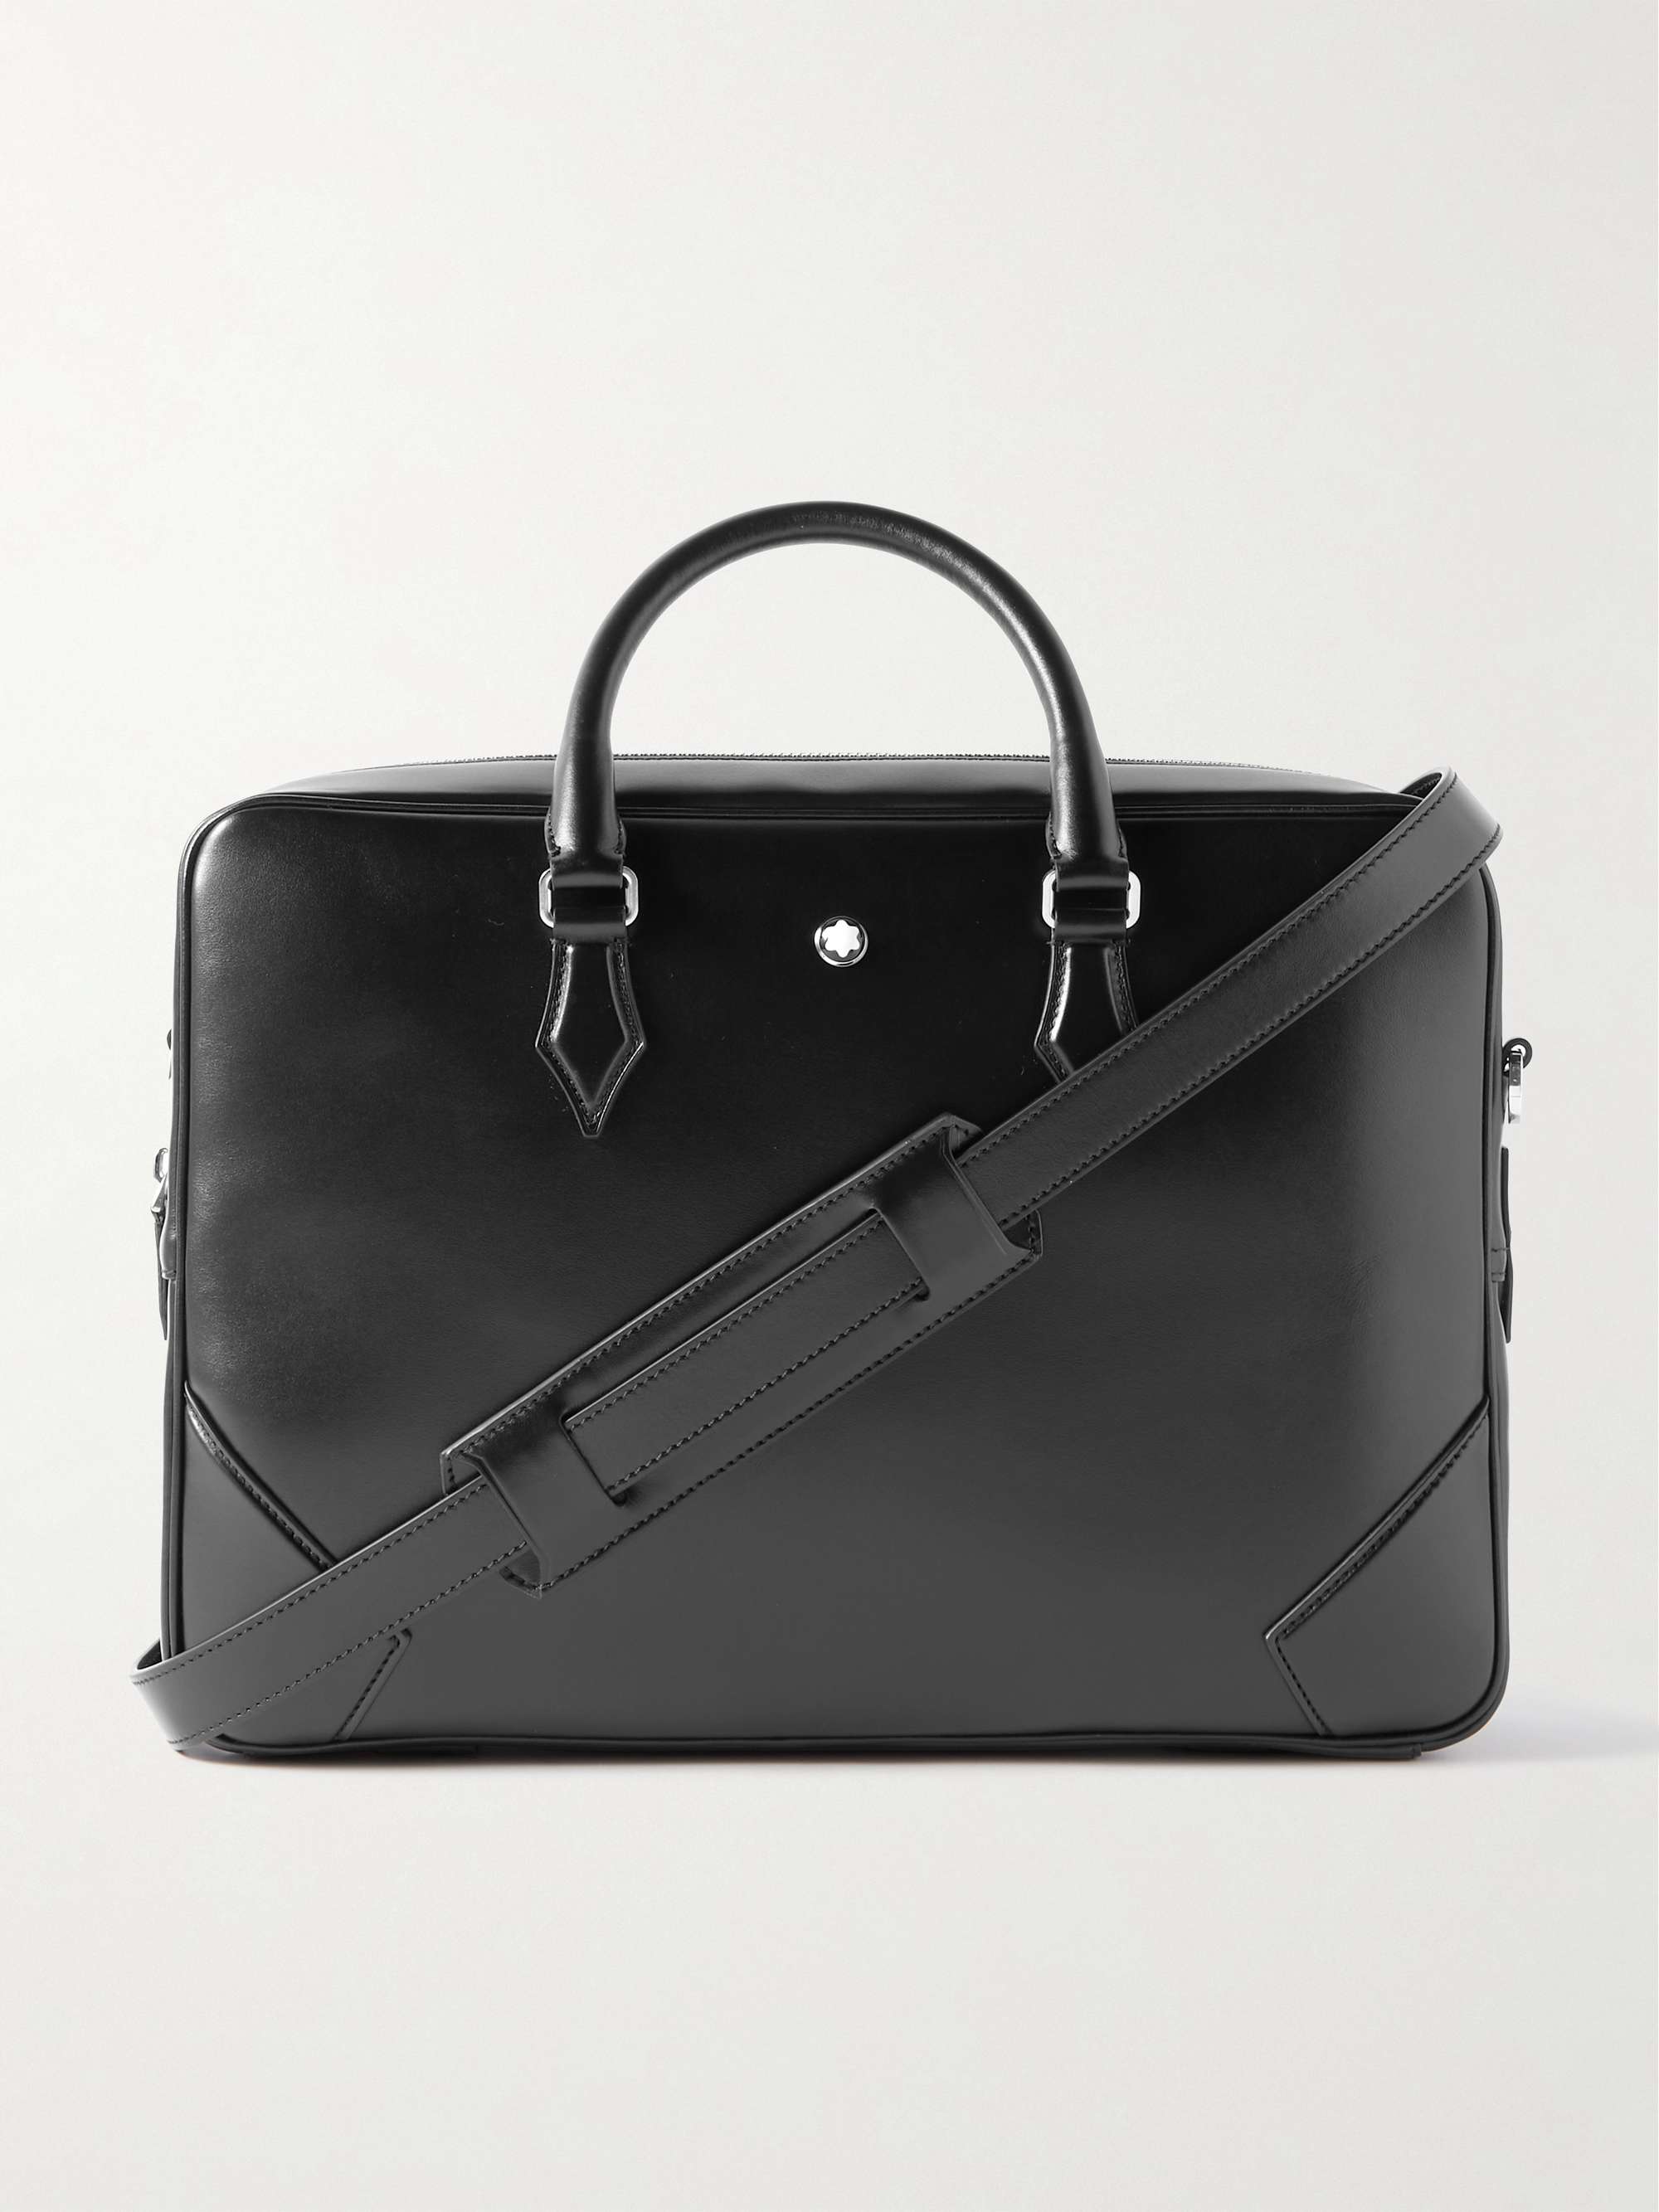 MONTBLANC Meisterstück Full-Grain Leather Briefcase